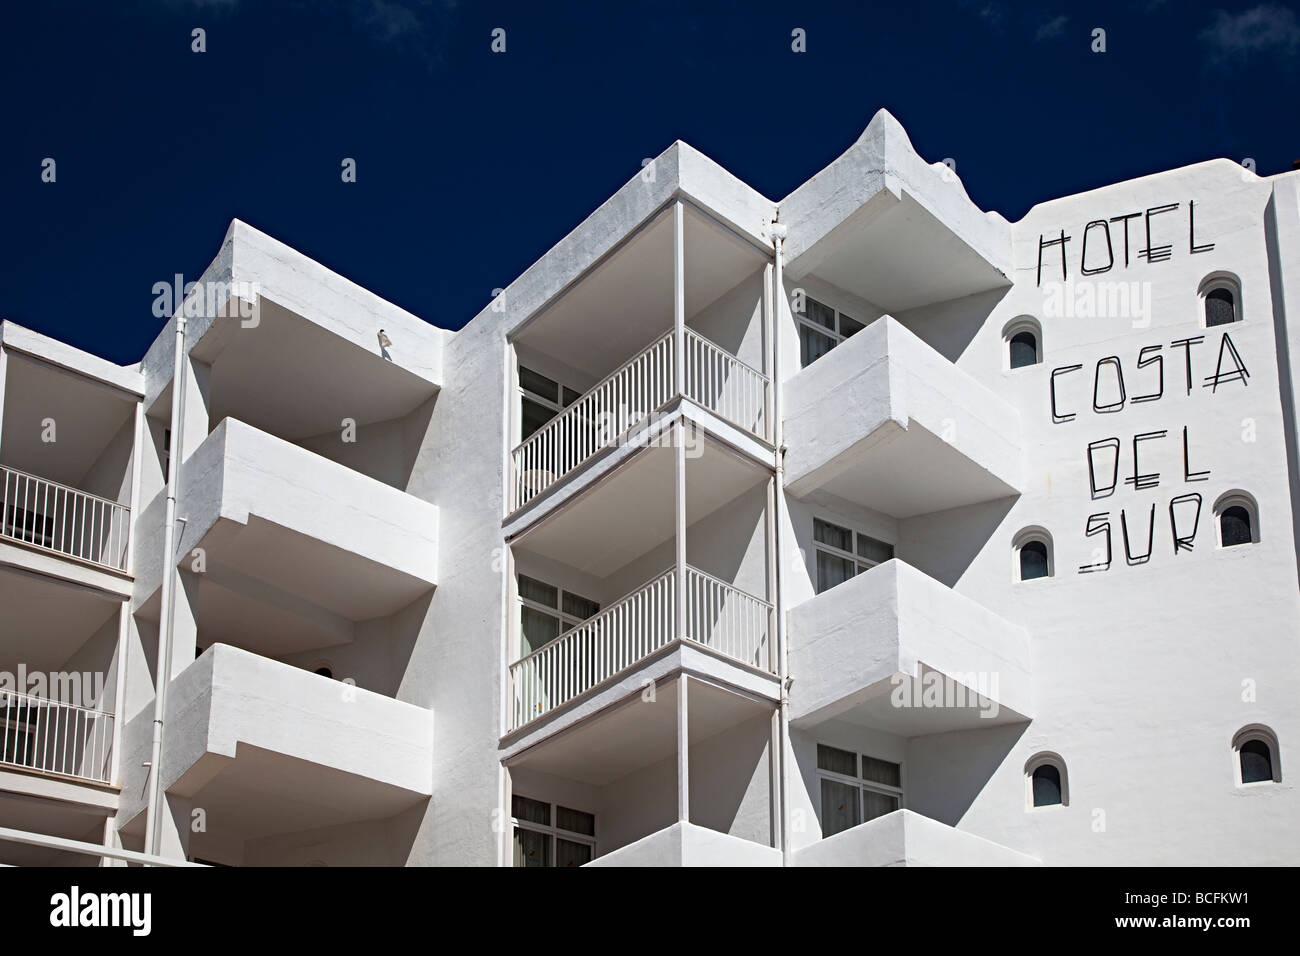 Hotel Costa del Sur Cala d'Or Mallorca Spain Stock Photo